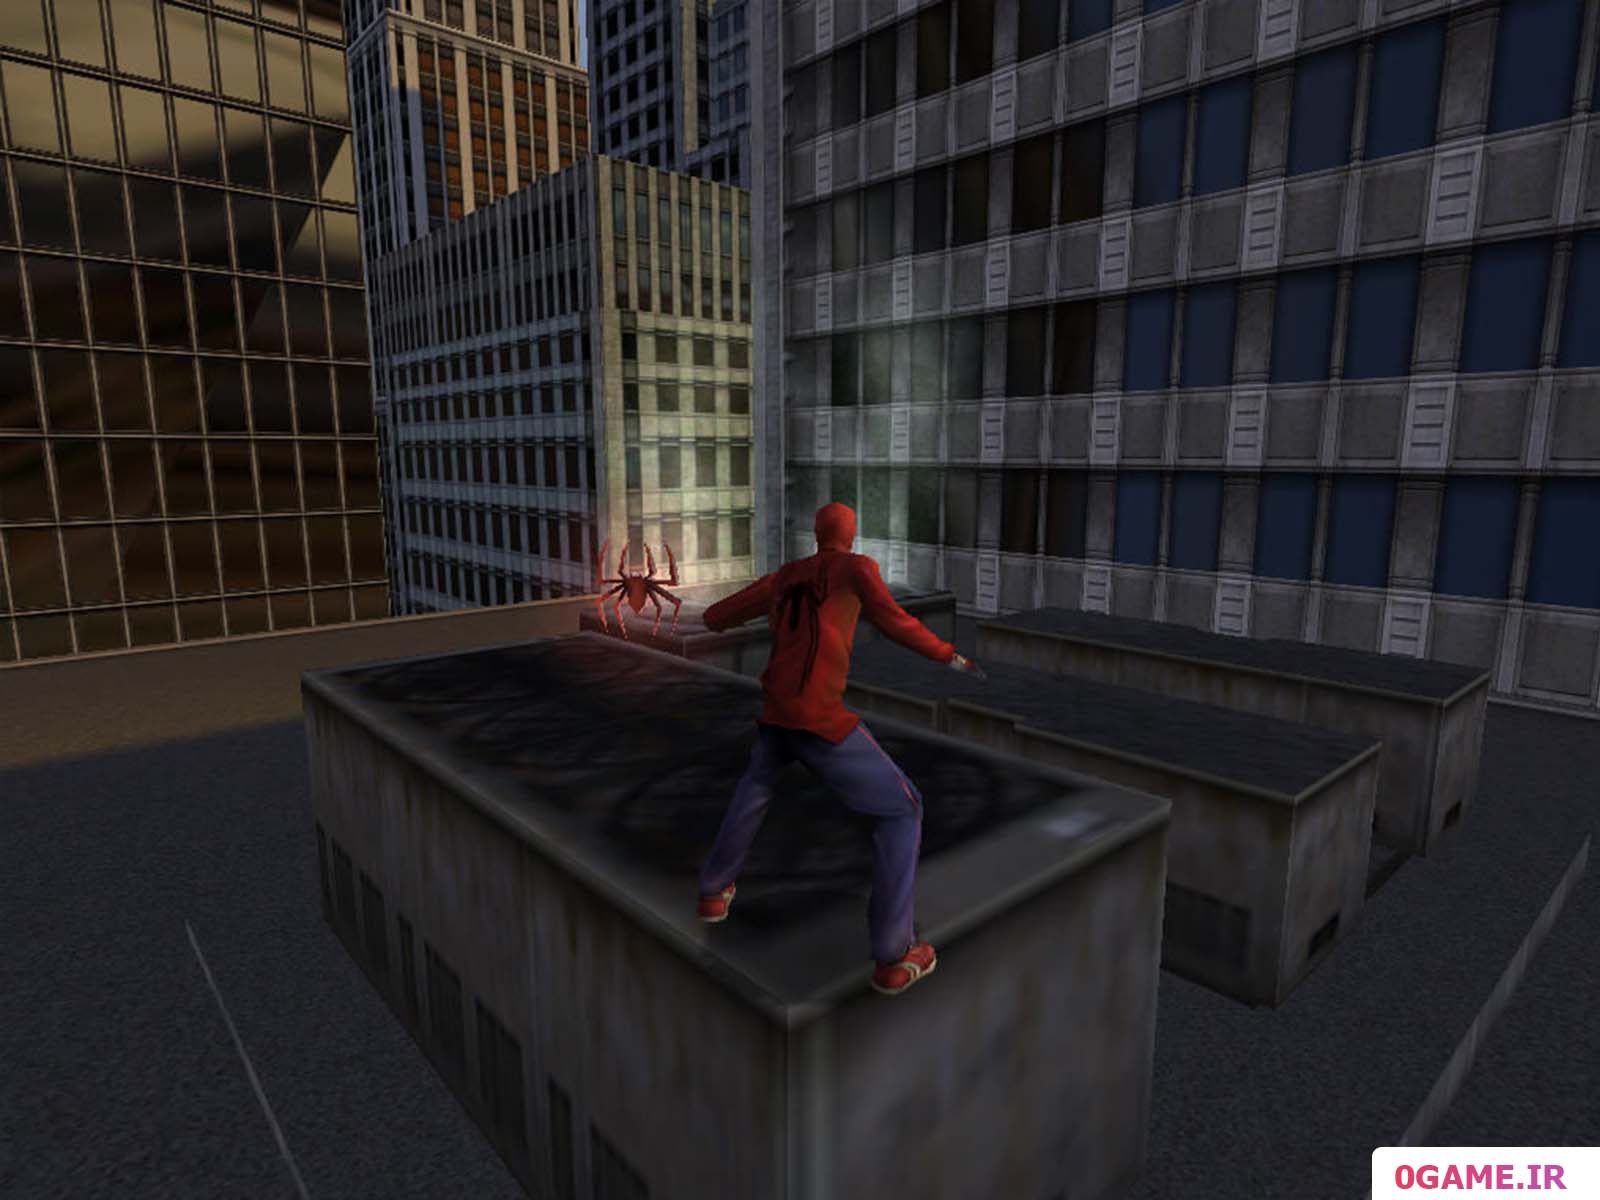  دانلود بازی مرد عنکبوتی 2002 (Spider Man: The Movie) نسخه کامل برای کامپیوتر